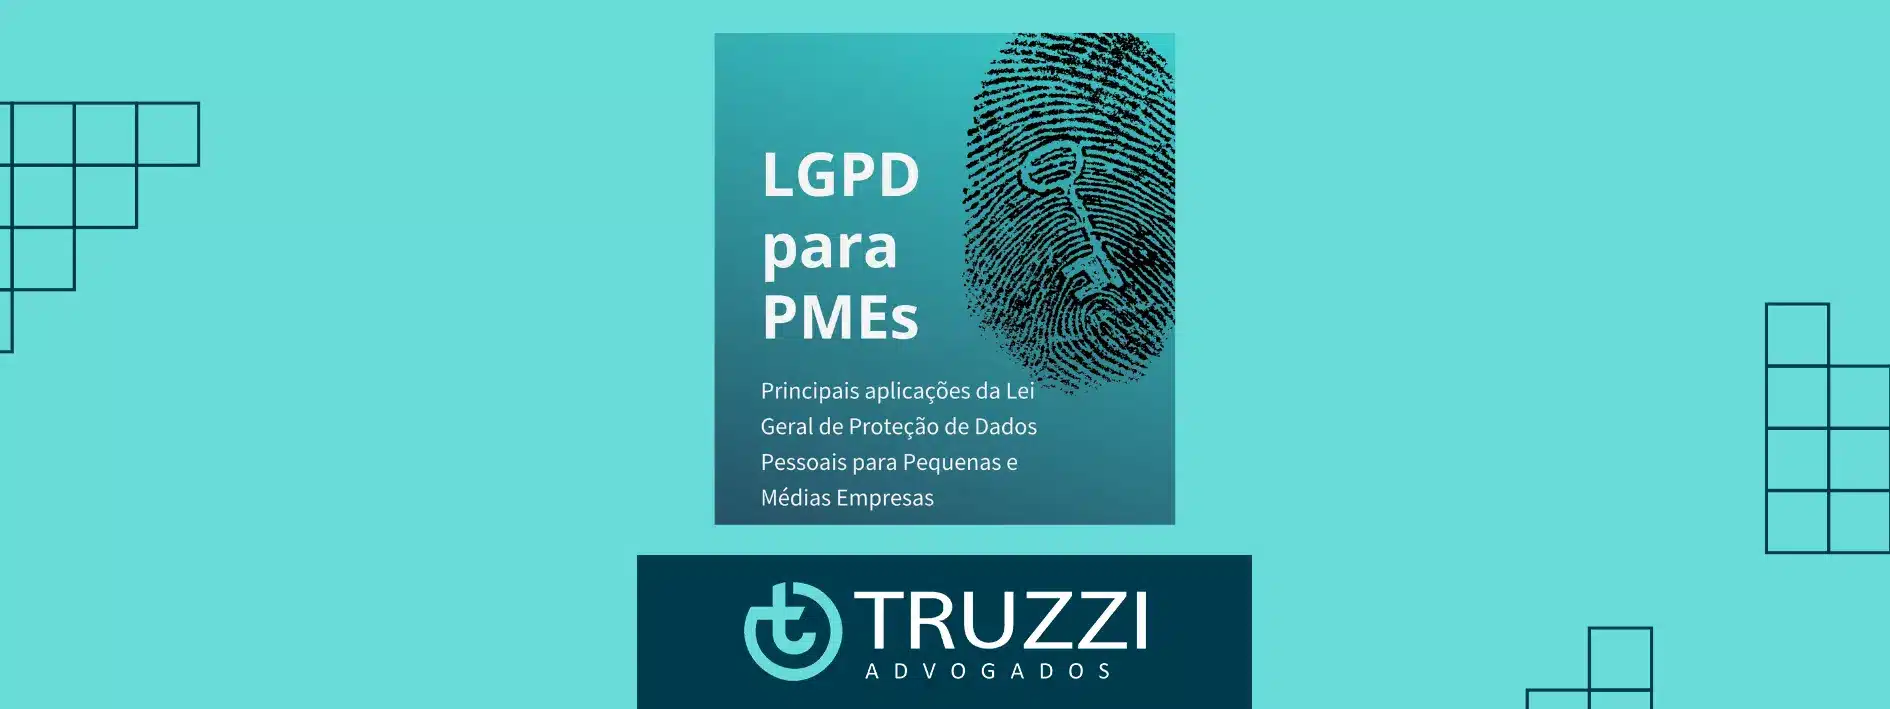 Ebook gratuito sobre implementação da LGPD para Empresas